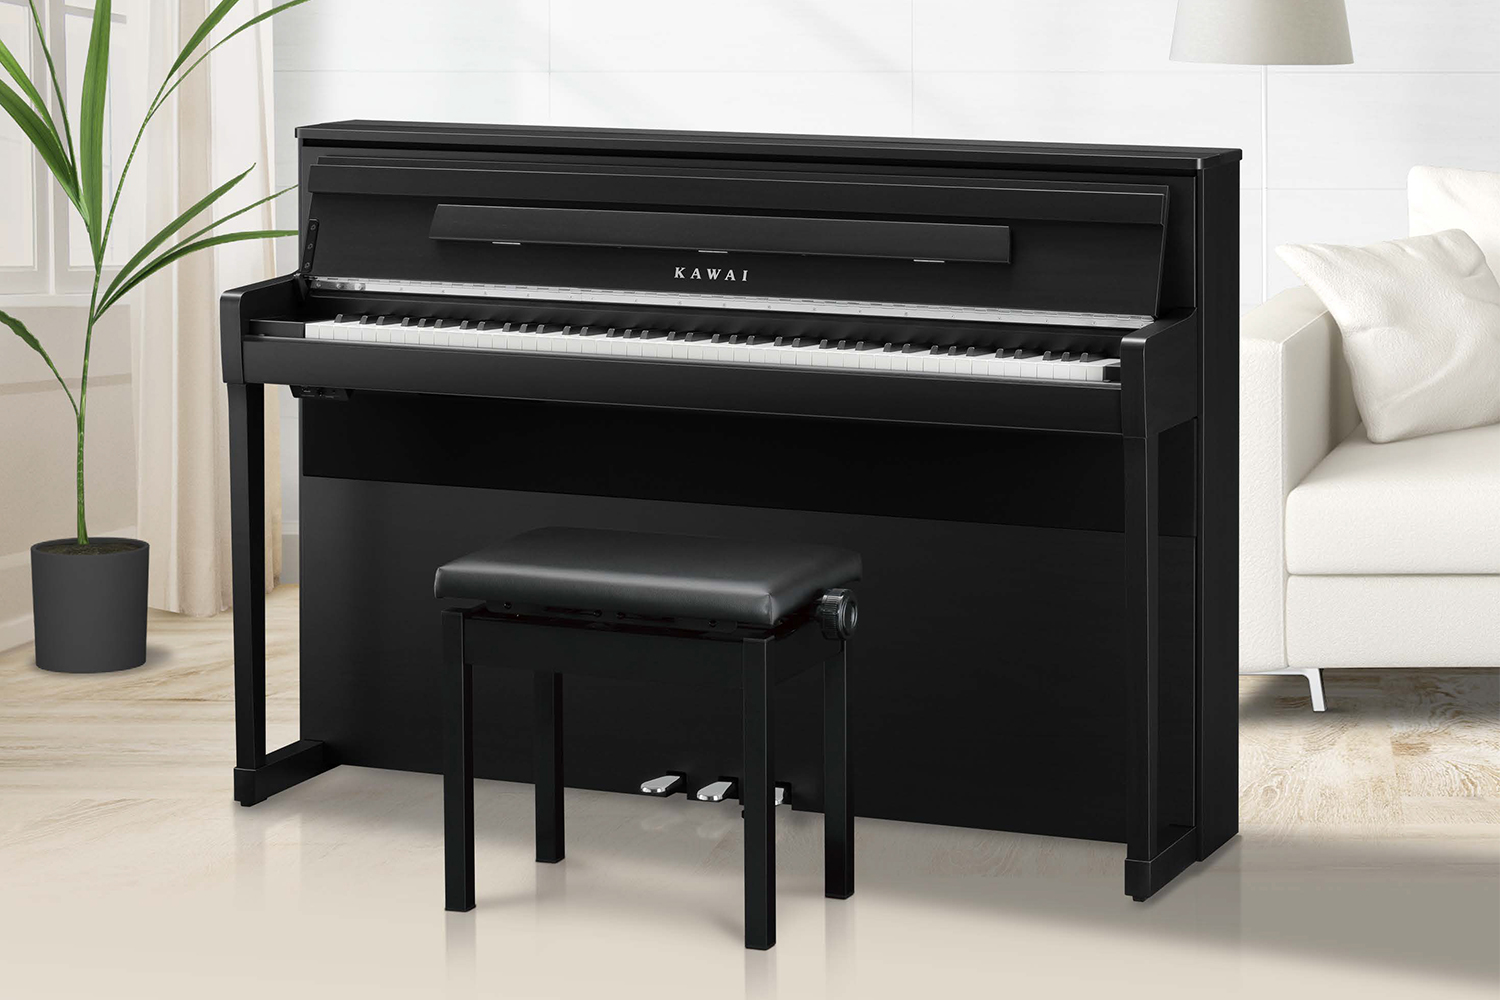 *もっと音楽が好きになる。そんな電子ピアノが産まれました。 アコースティックピアノのようなデザインの最新コラボ電子ピアノが入荷決定となりました。 『島村楽器×KAWAIの新しいコラボレーションモデル「CA9900GP」が3/10発売になります！』 *島村楽器×KAWAI CA9900GP |*販売価 […]